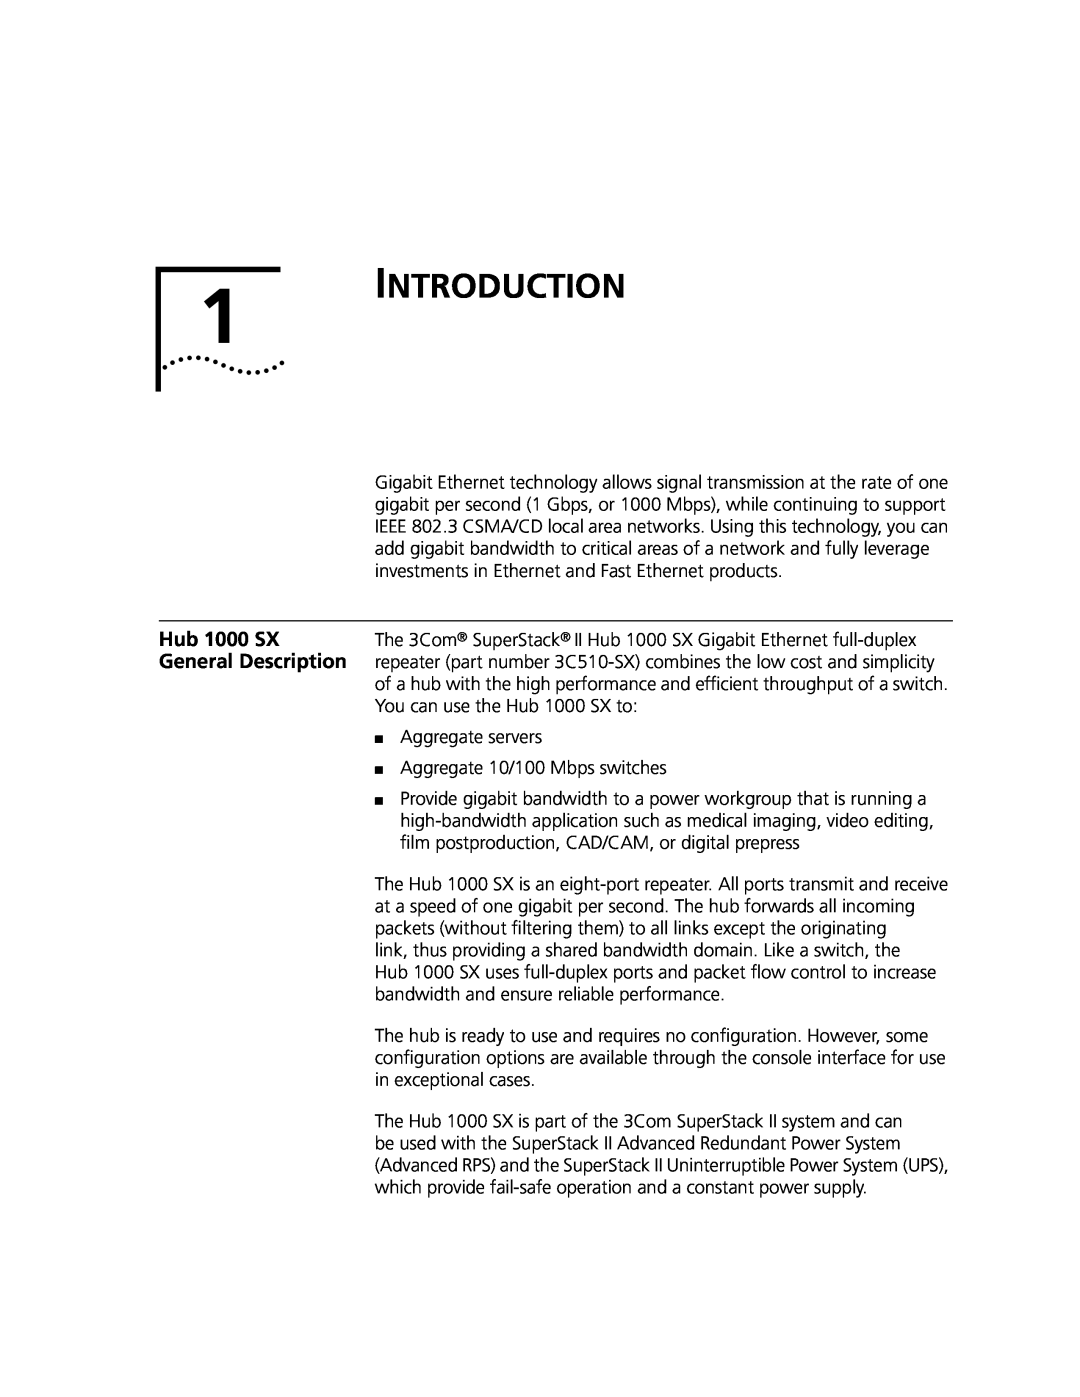 3Com Hub 1000 SX manual Introduction, General Description 